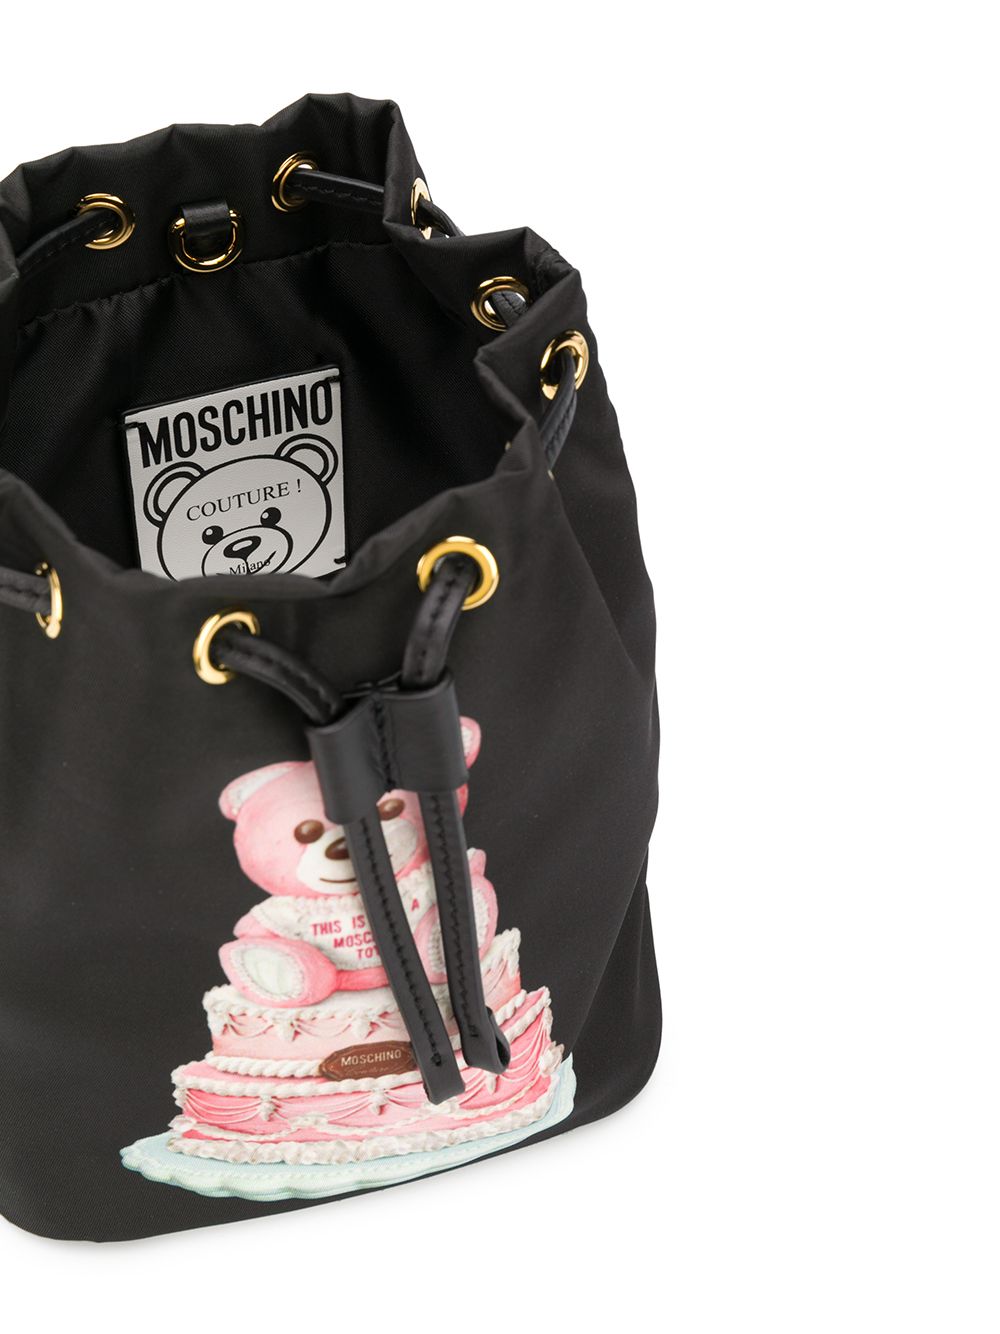 фото Moschino сумка-ведро teddy cake